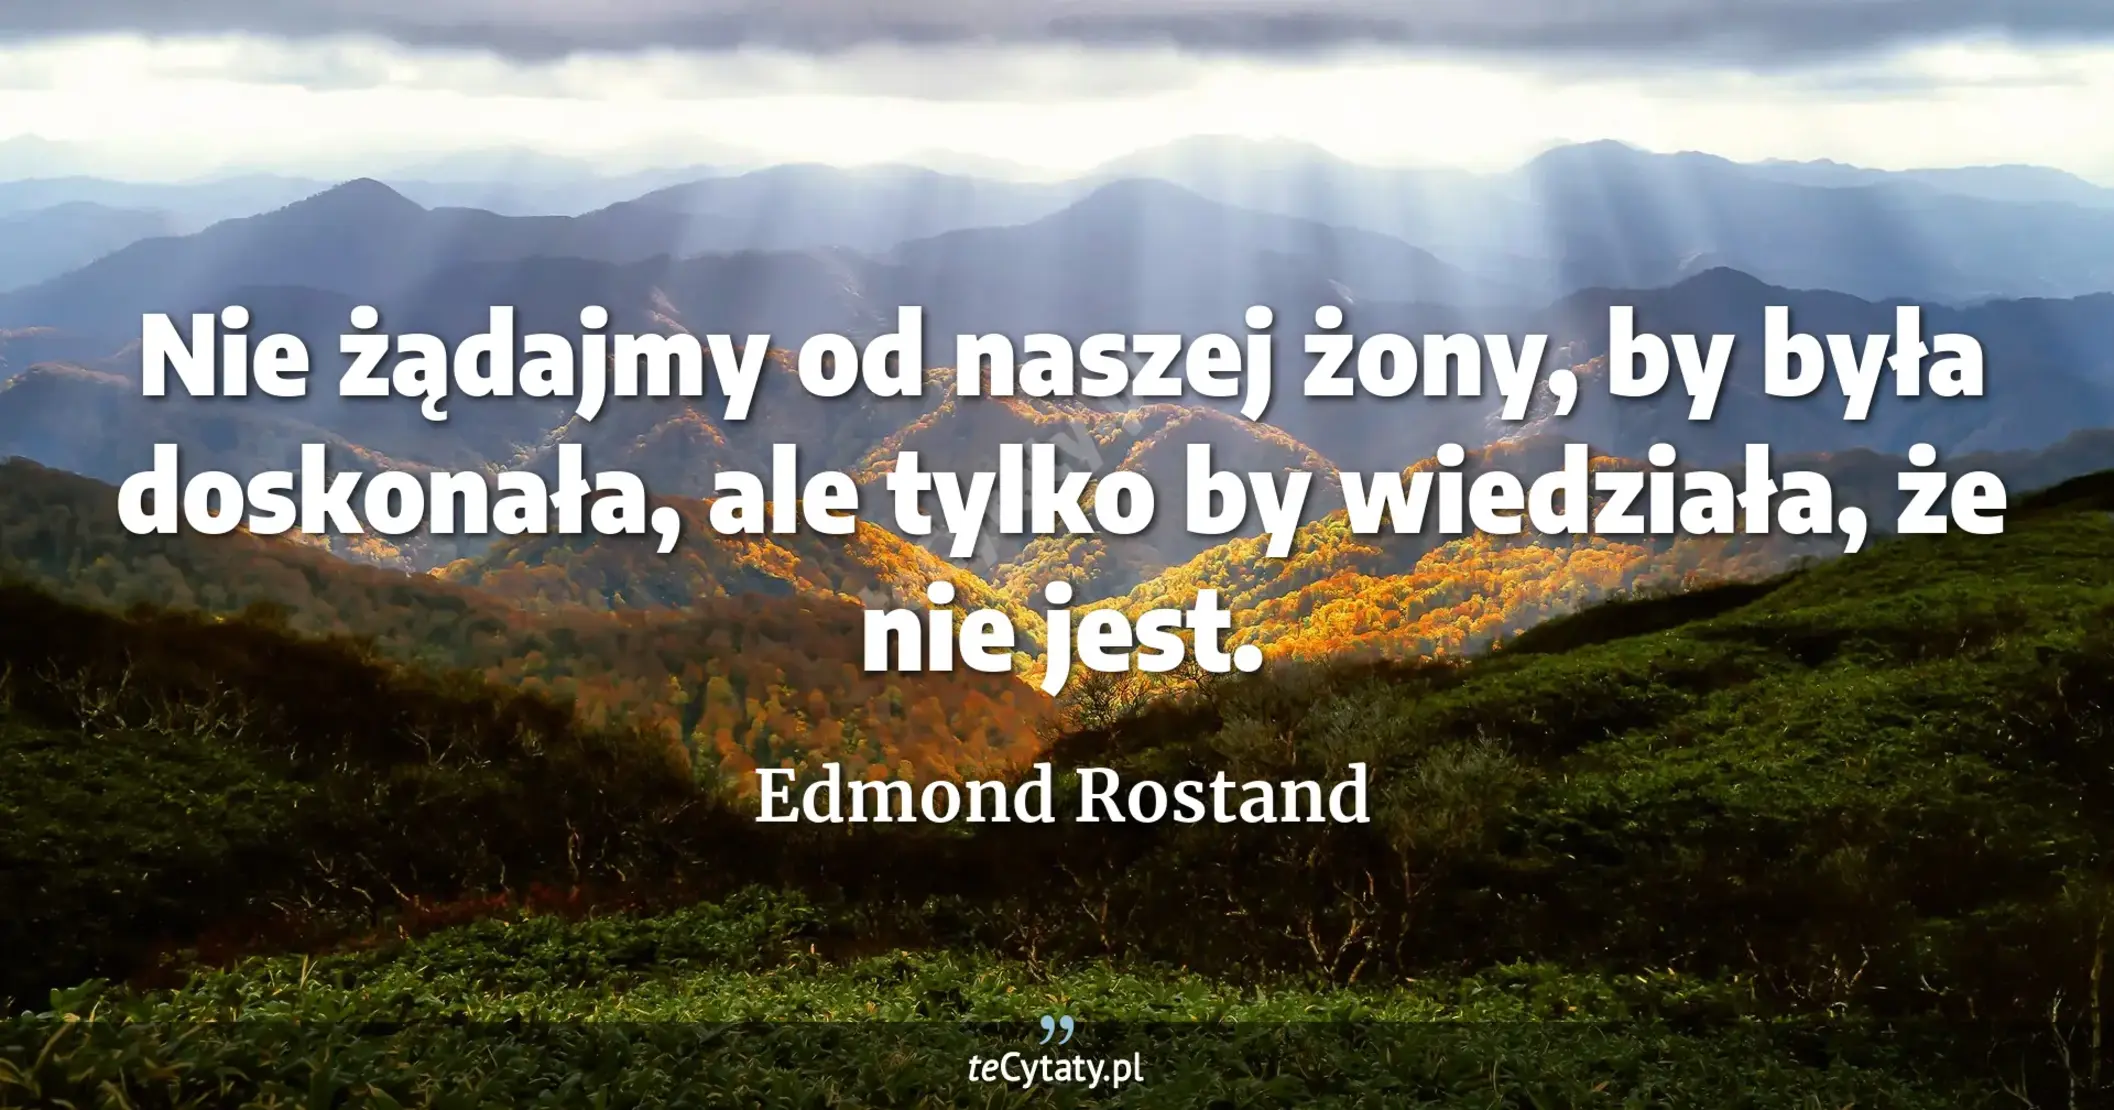 Nie żądajmy od naszej żony, by była doskonała, ale tylko by wiedziała, że nie jest. - Edmond Rostand